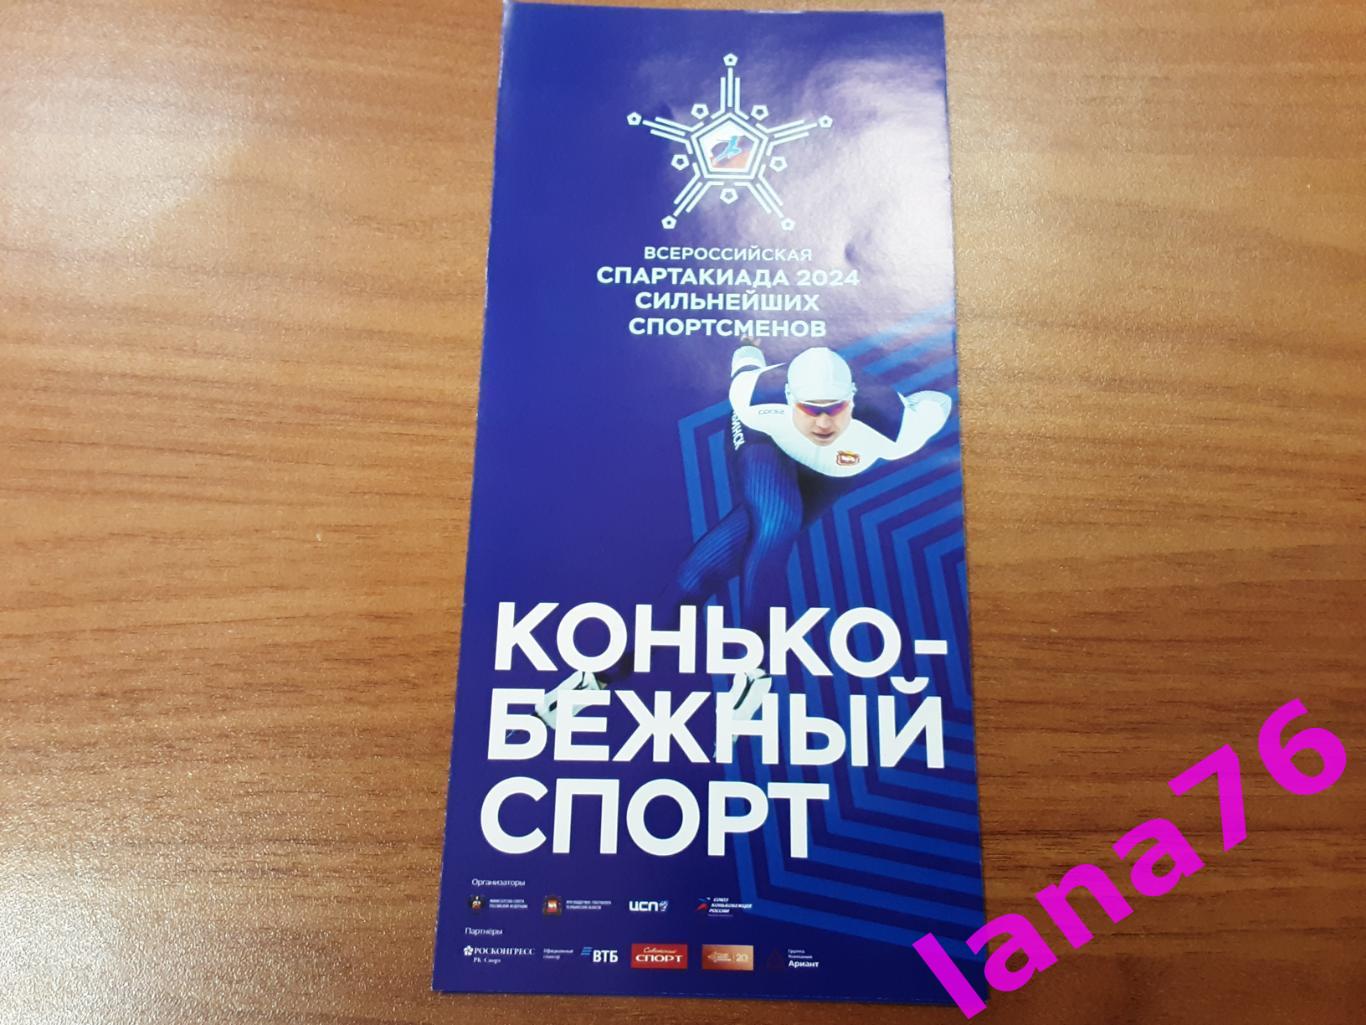 Всероссийская спартакиада 14-18.02.2024 Челябинск конькобежный спорт